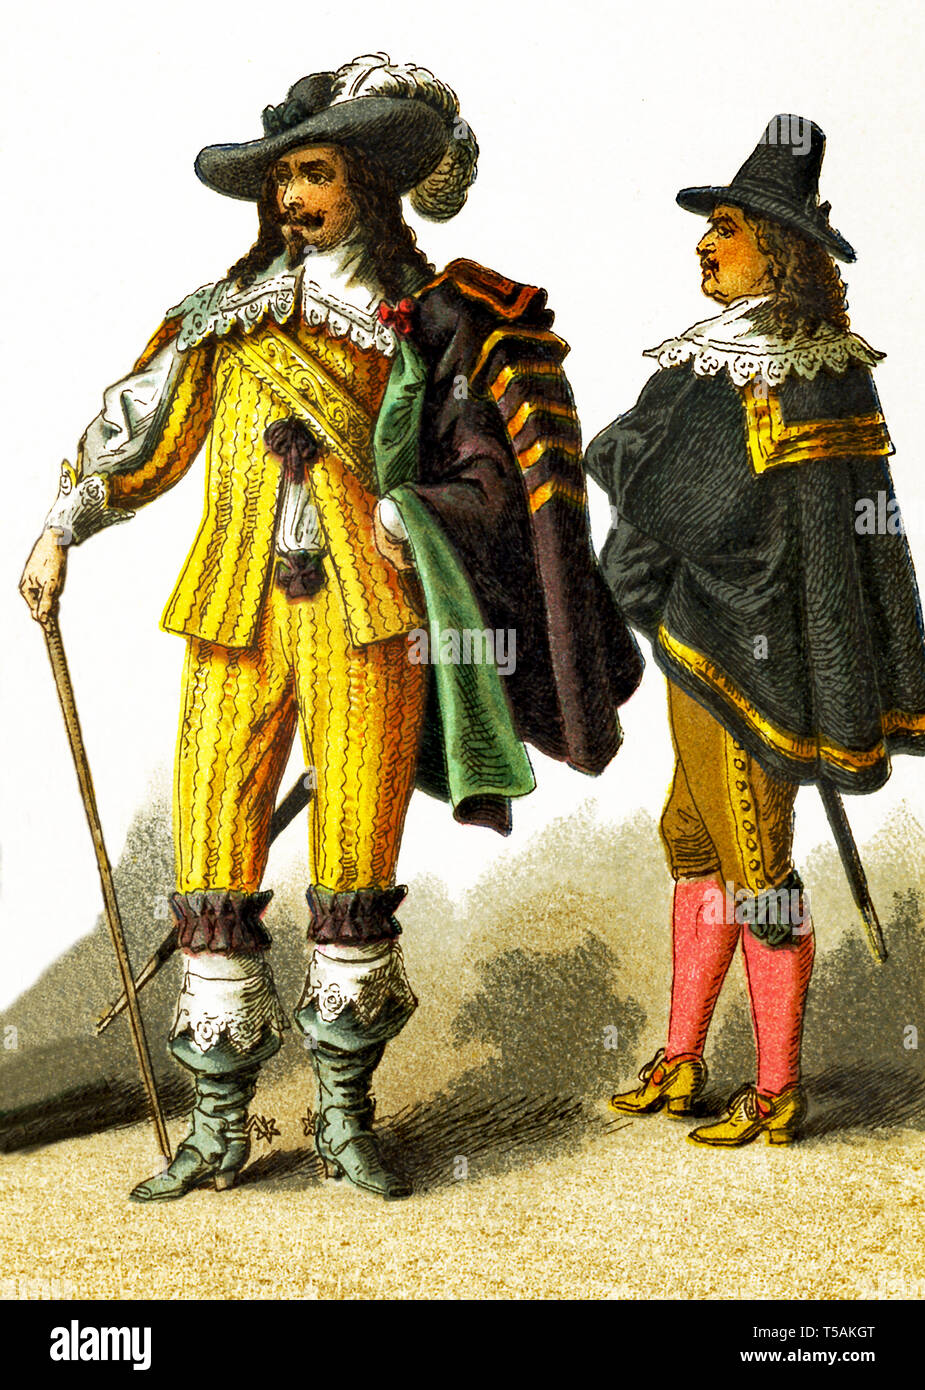 Aquí las cifras representan cavaliers francesa en el 1600. Esta ilustración se remonta a 1882. Foto de stock